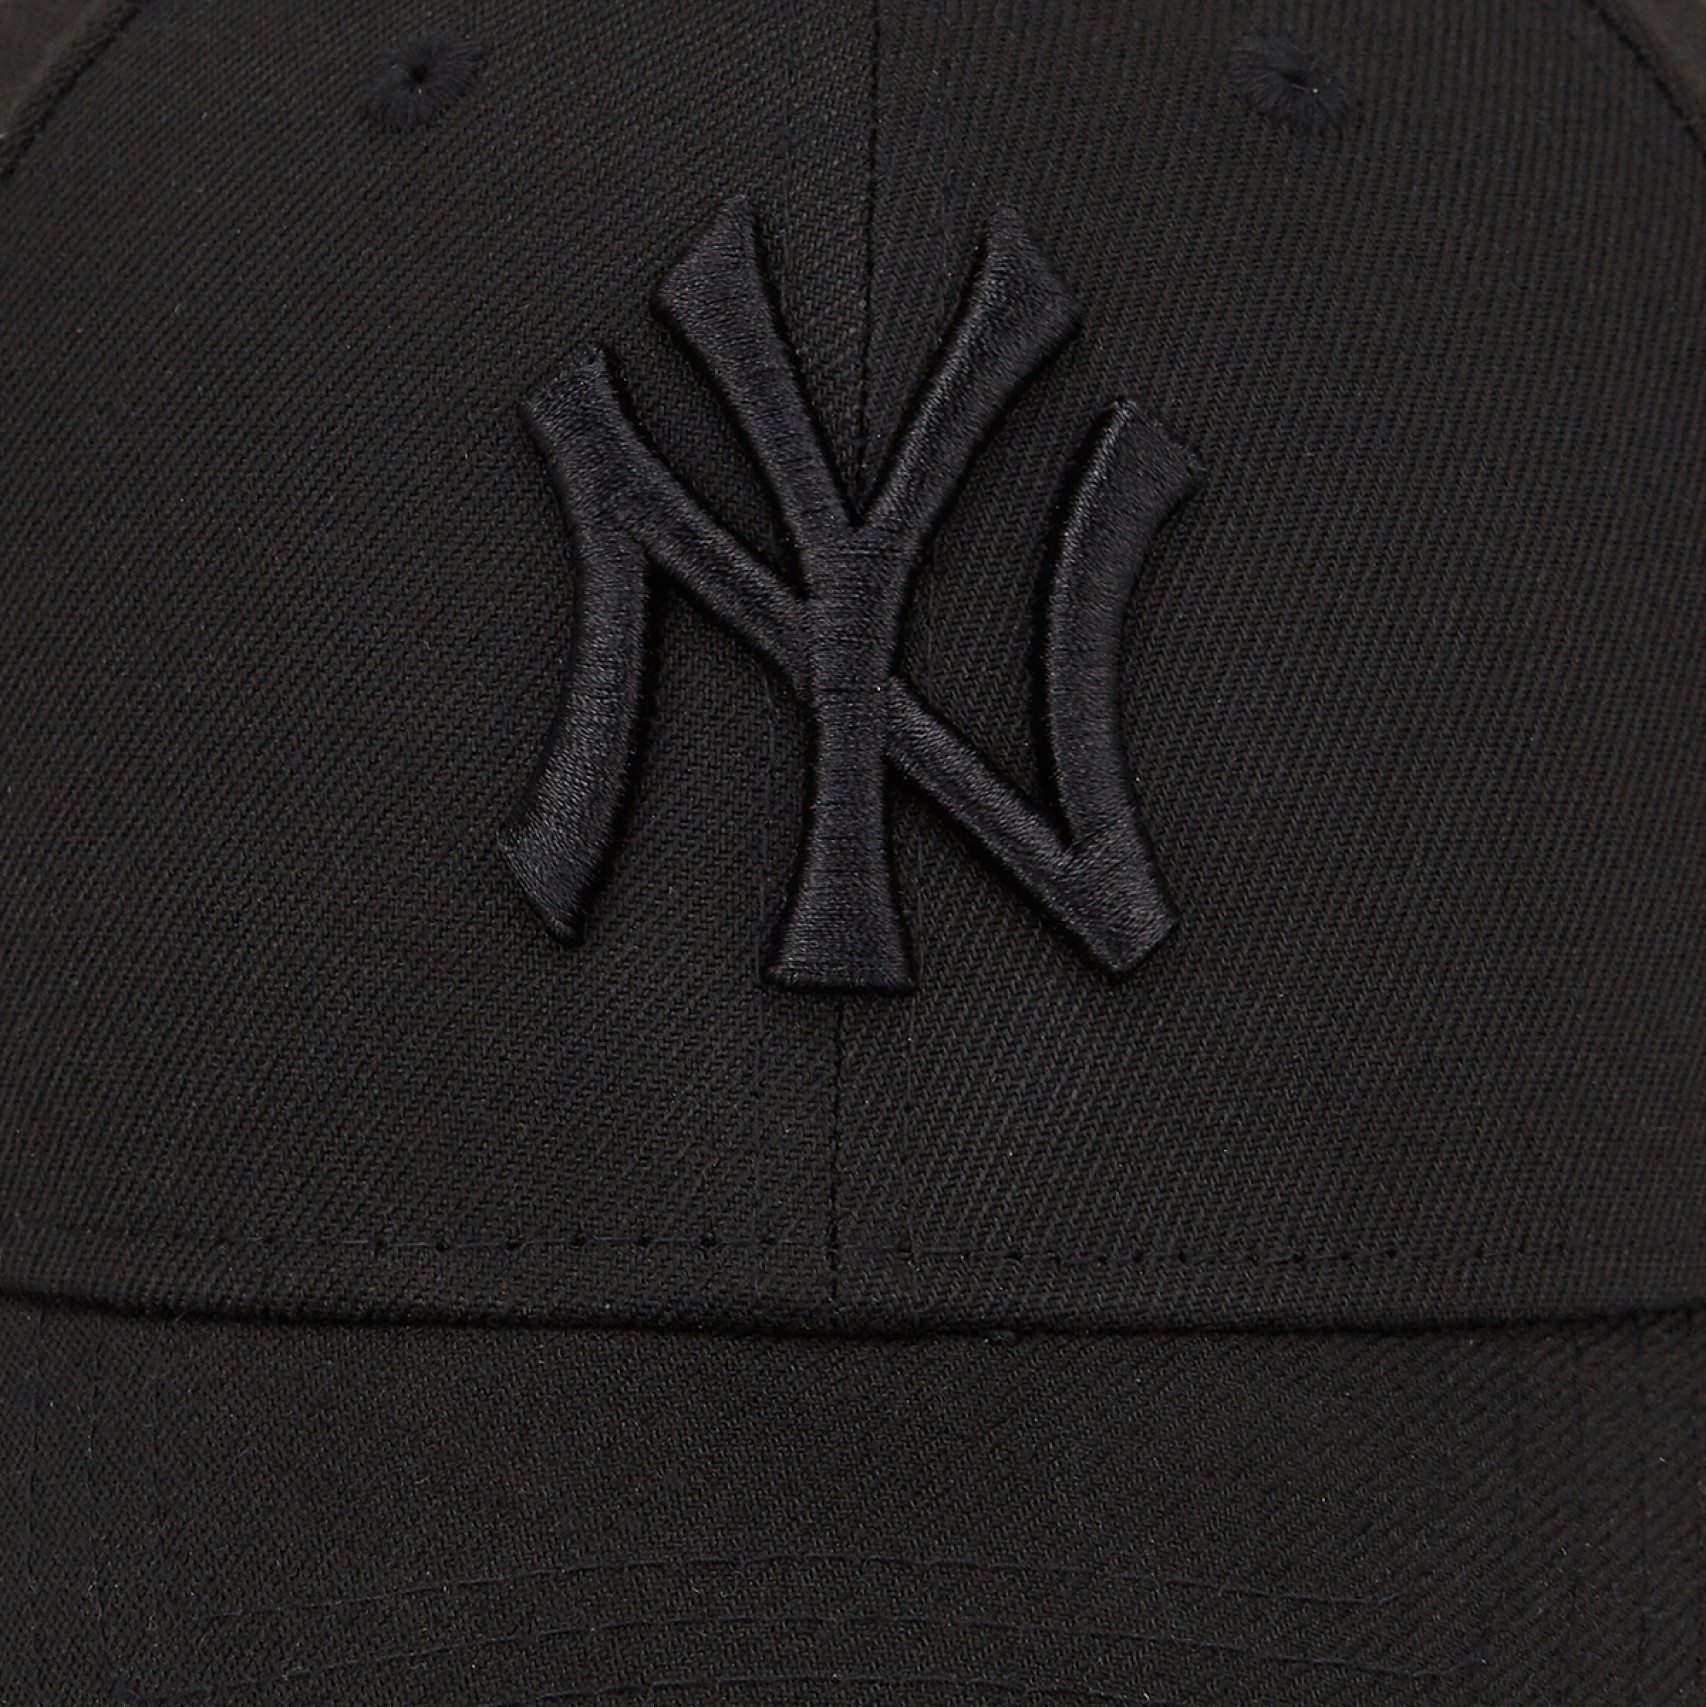 MLB 뉴욕 양키스 블랙 온 블랙 언스트럭쳐 볼캡 블랙 / 14212078